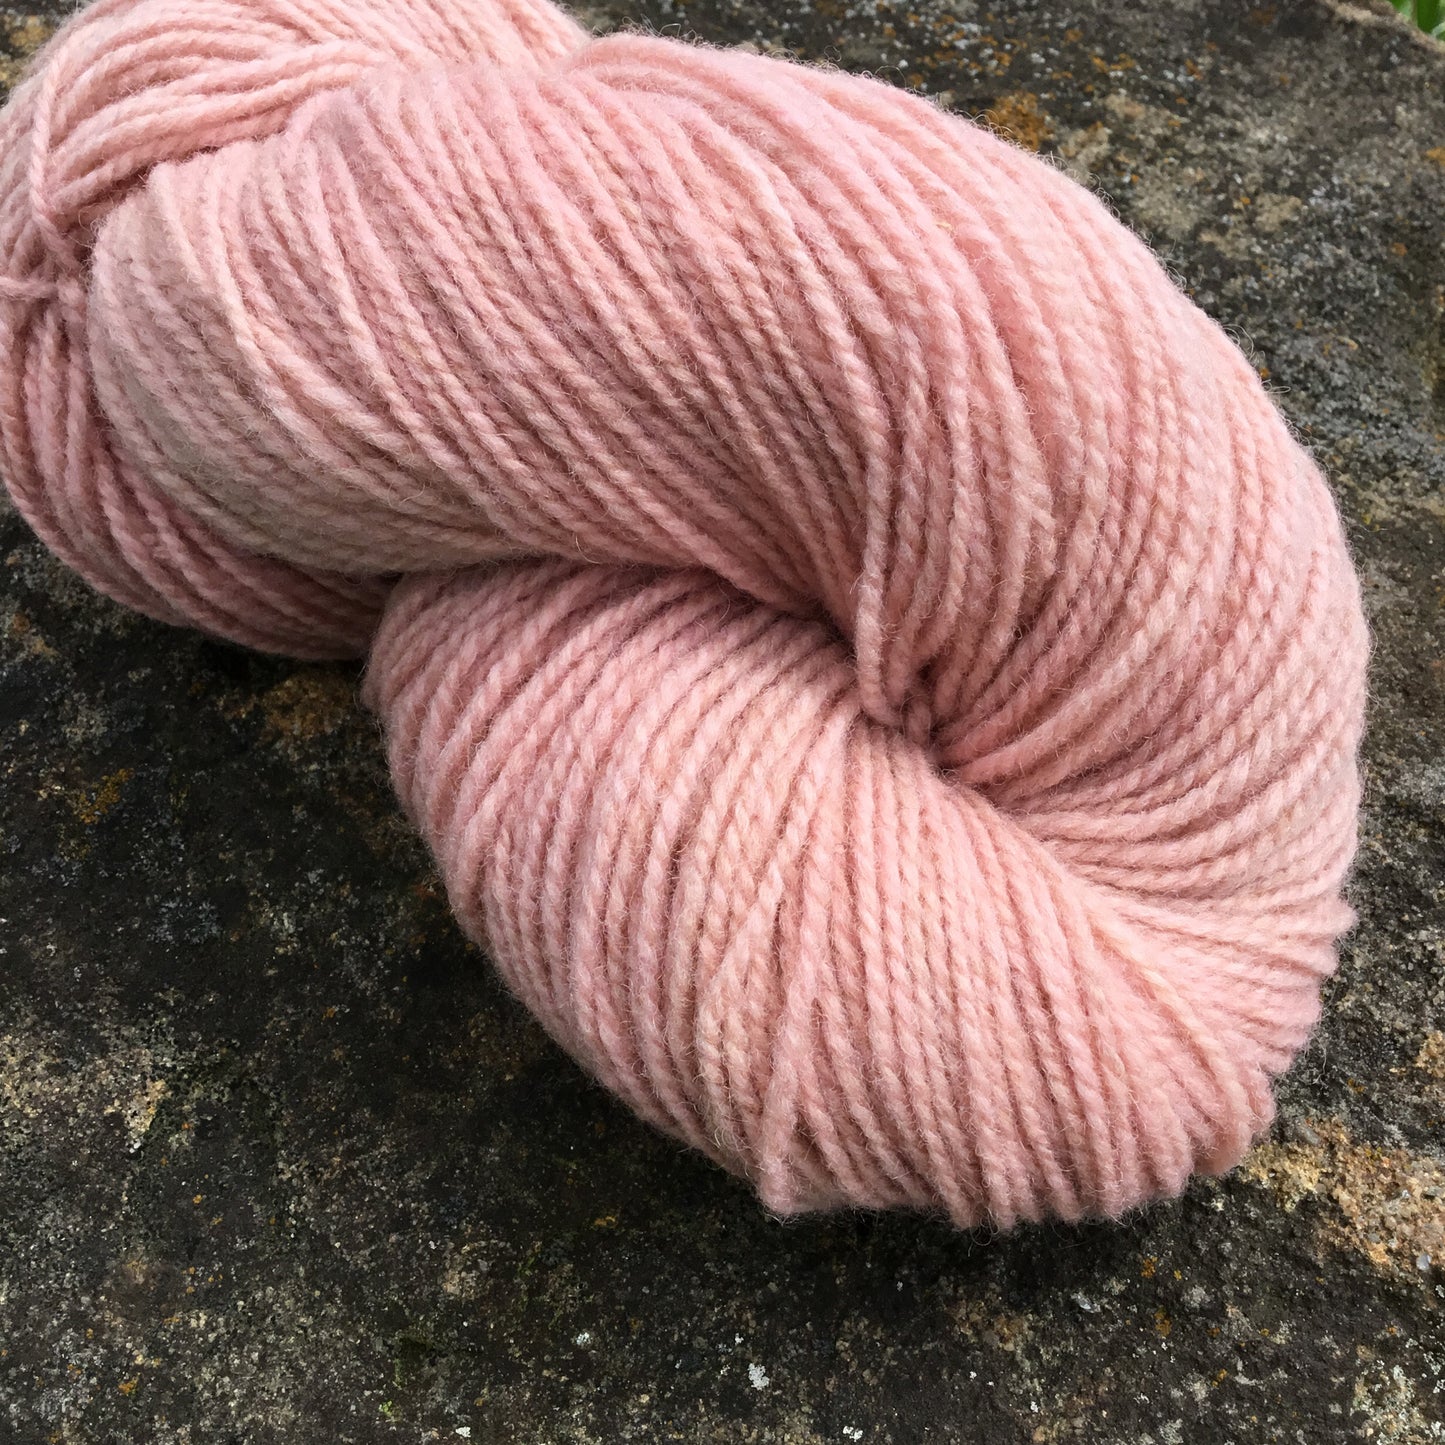 Soft Pink - DK Wool Yarn (80Merino 20Romney) 2 ply - 4 oz skeins